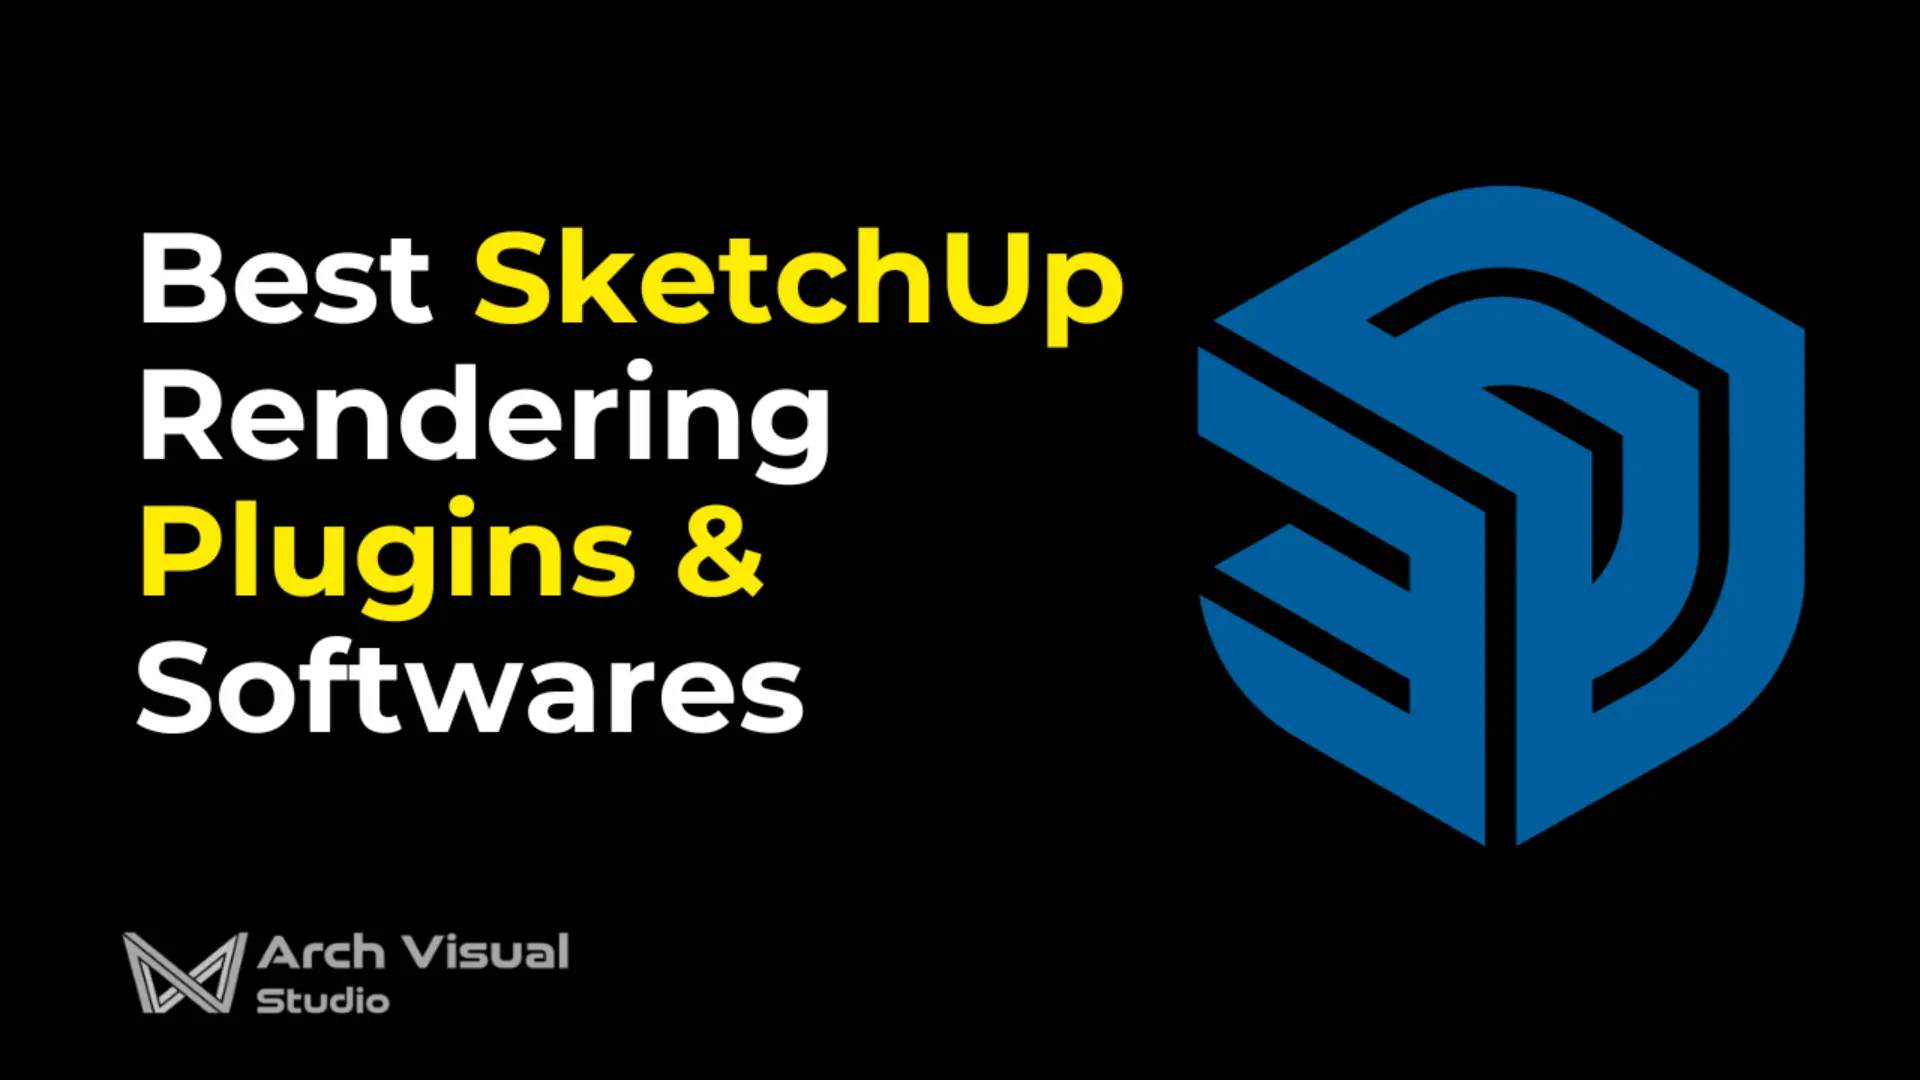 Best SketchUp Rendering Plugins & Softwares